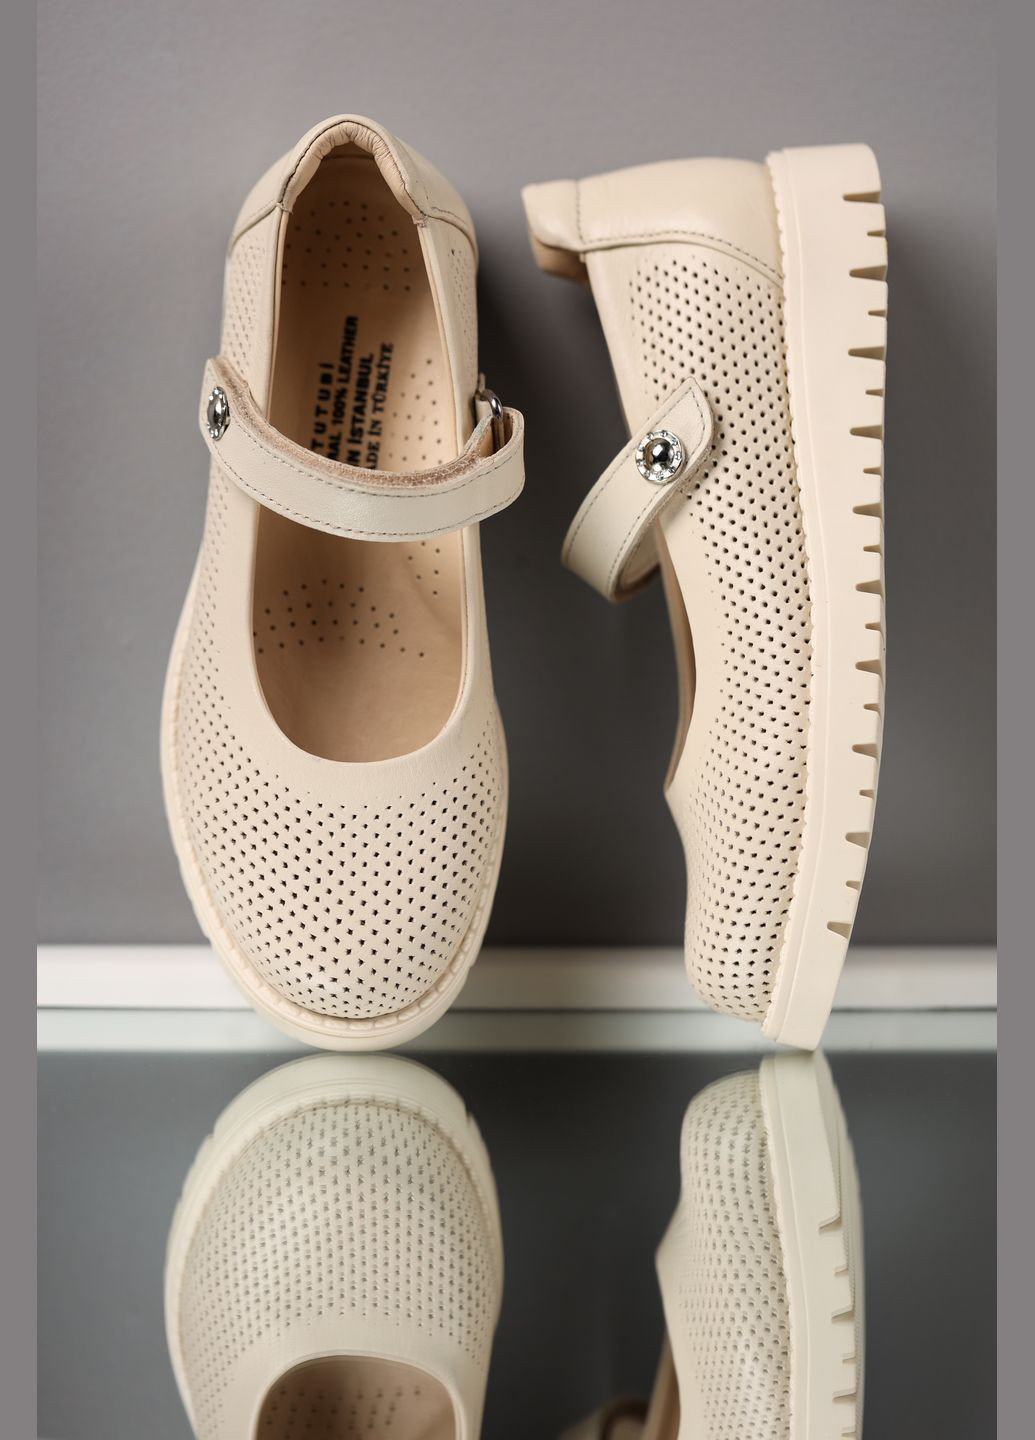 Бежевые туфли с перфорацией из натуральной кожи для девочки 9418 30 18.5см бежевый 71472 без каблука Tutubi